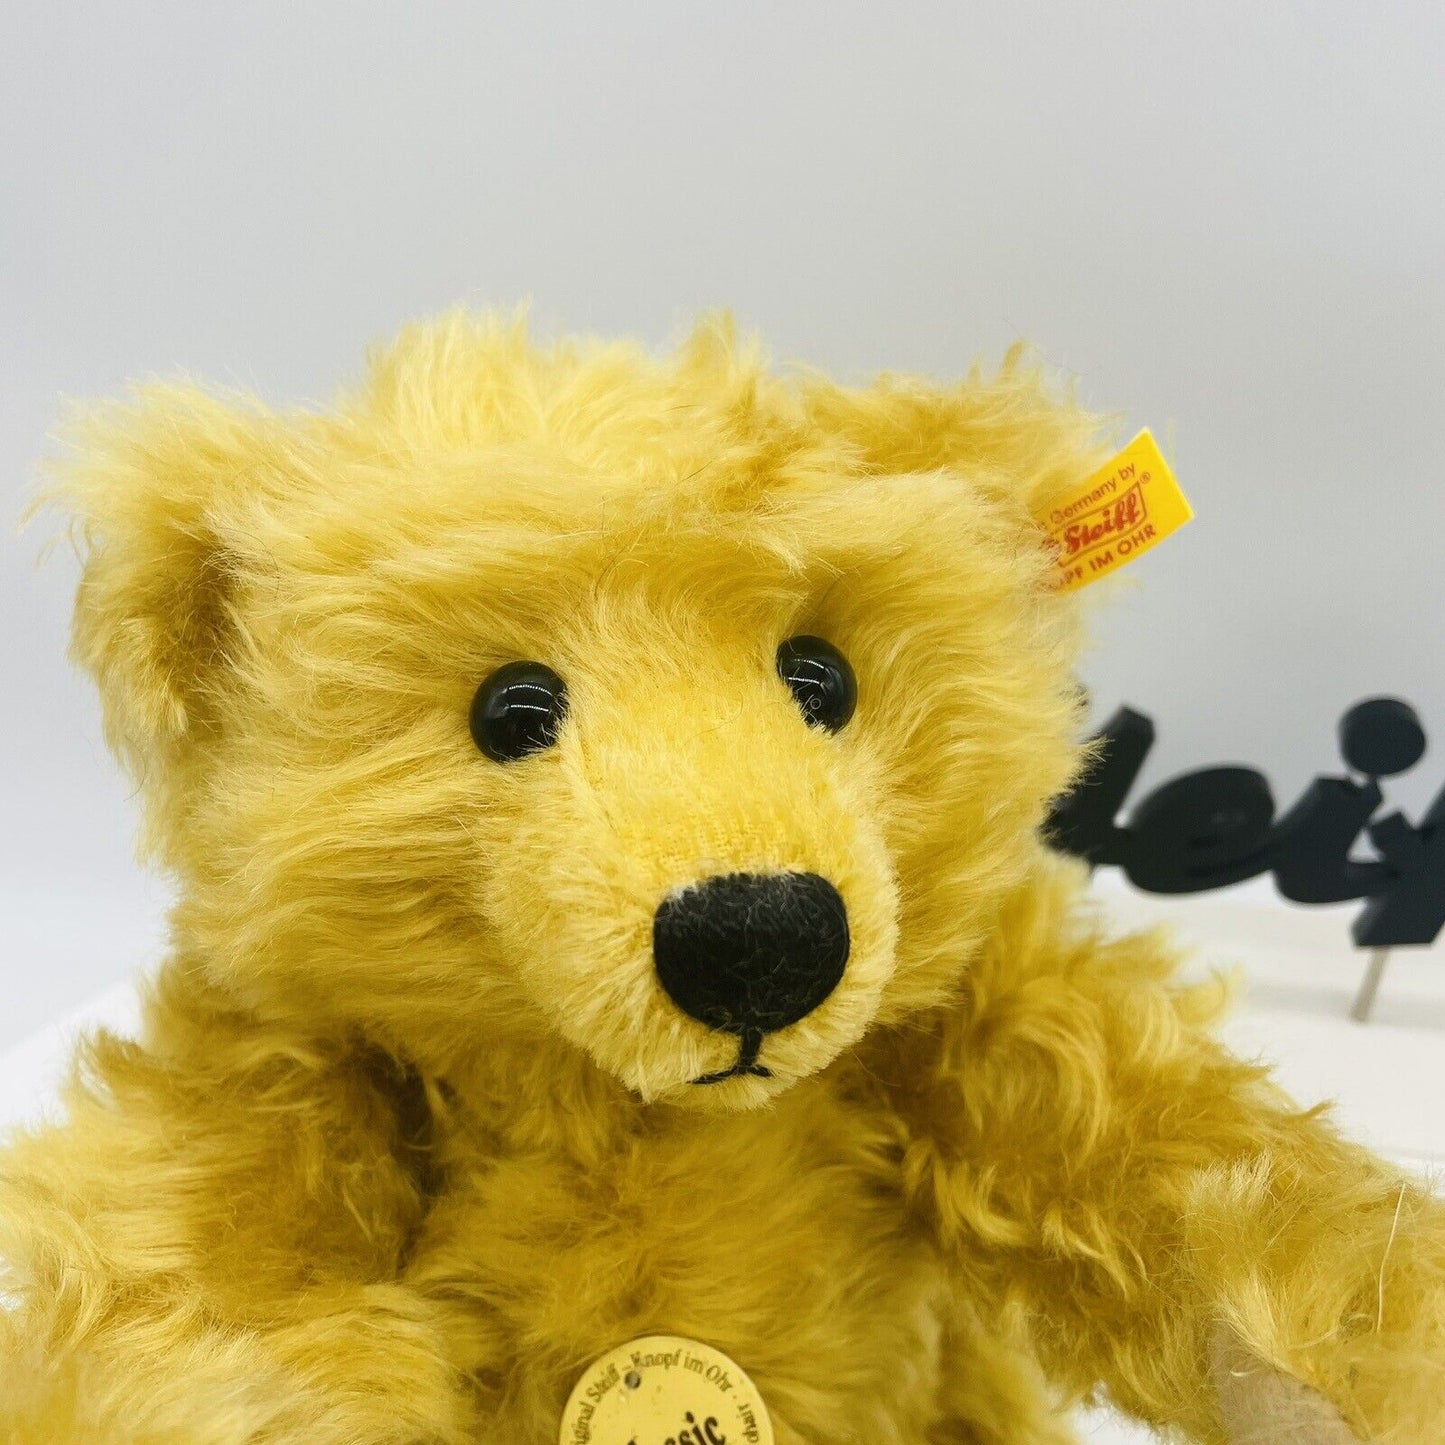 Steiff Classic Teddybär blond 001550 aus 2002 32cm Mohair